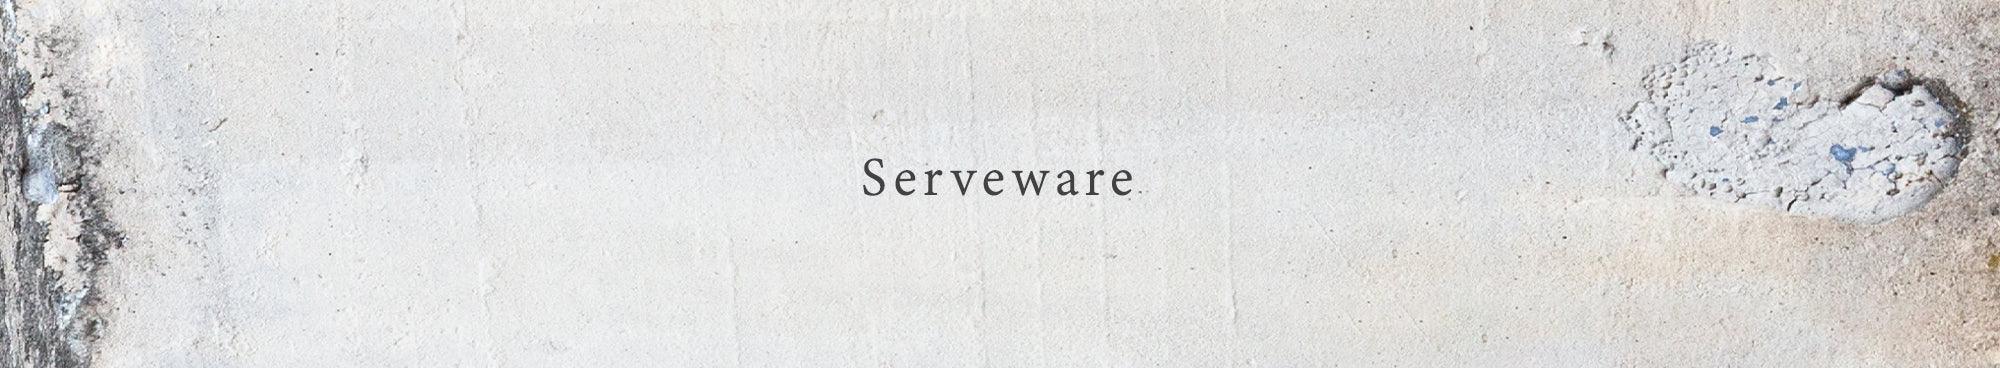 Serveware - Rikumo